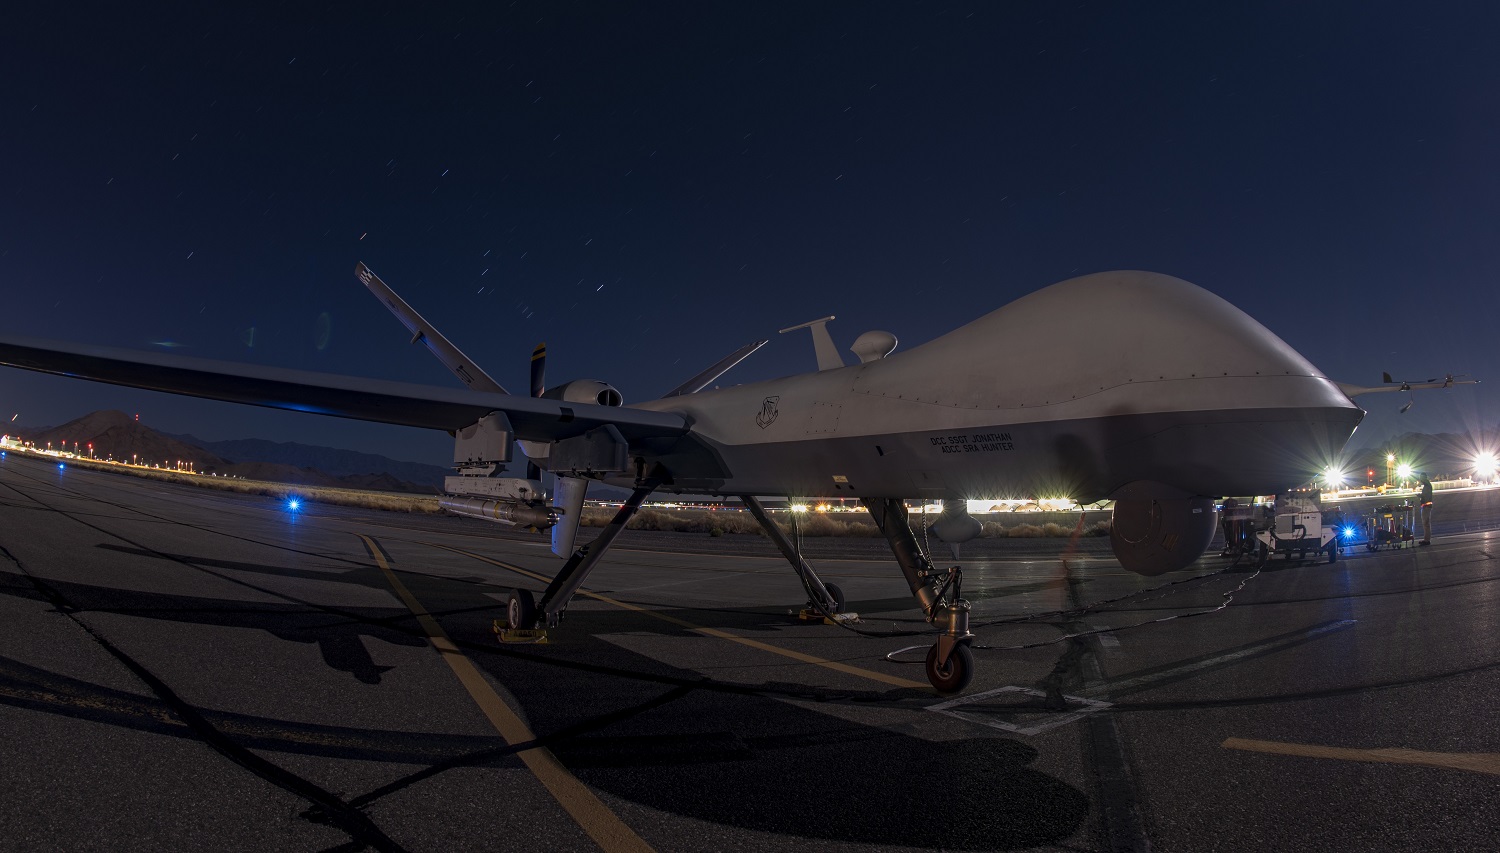 US Air Force MQ-9 Reaper UAV Fires AIM-9X Air-to-Air Missile